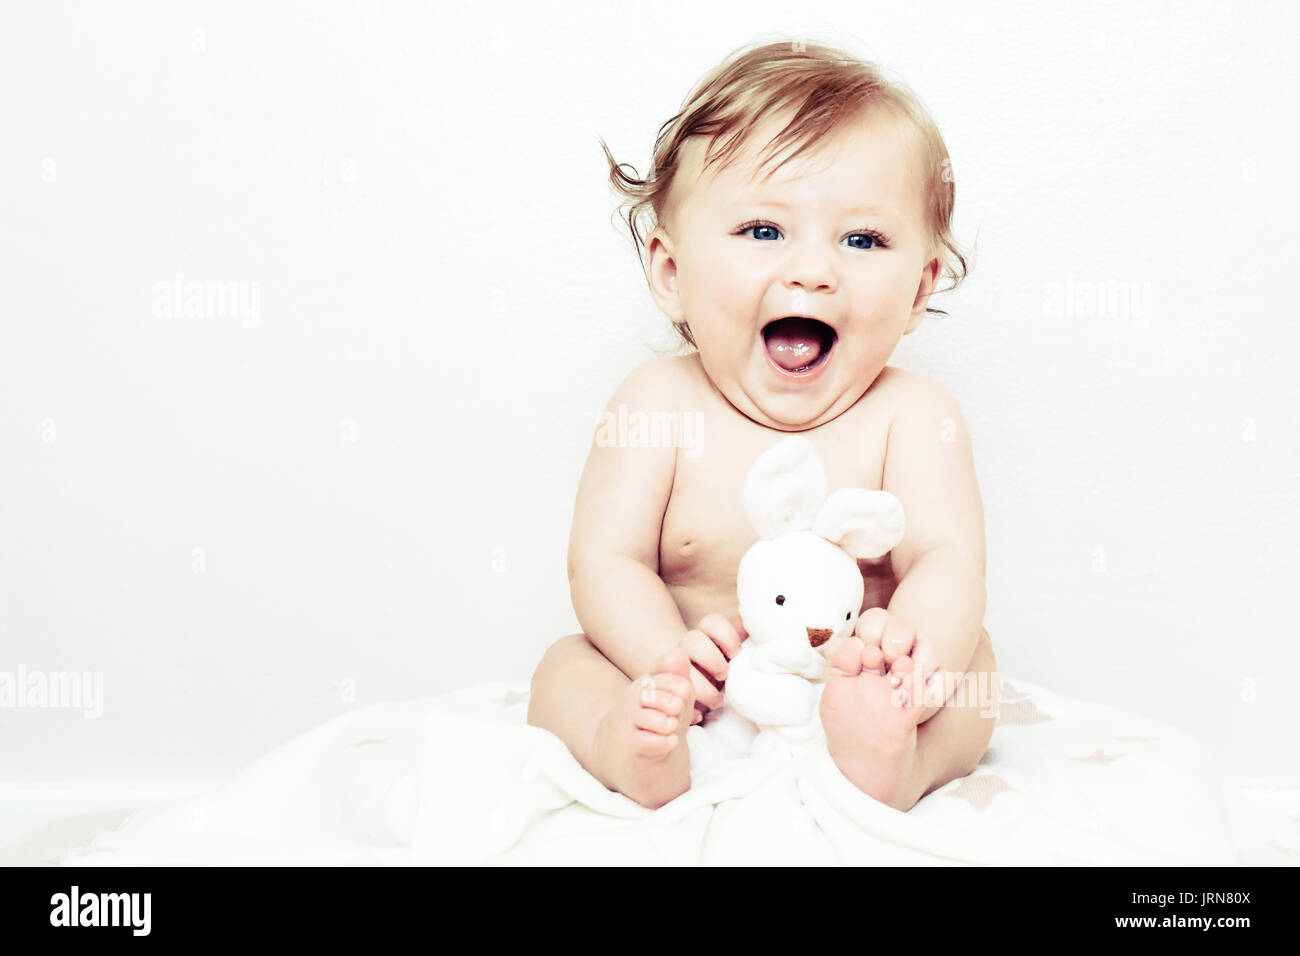 Ein glückliches Baby Mädchen Spaß am Lachen und Lächeln Stockfoto